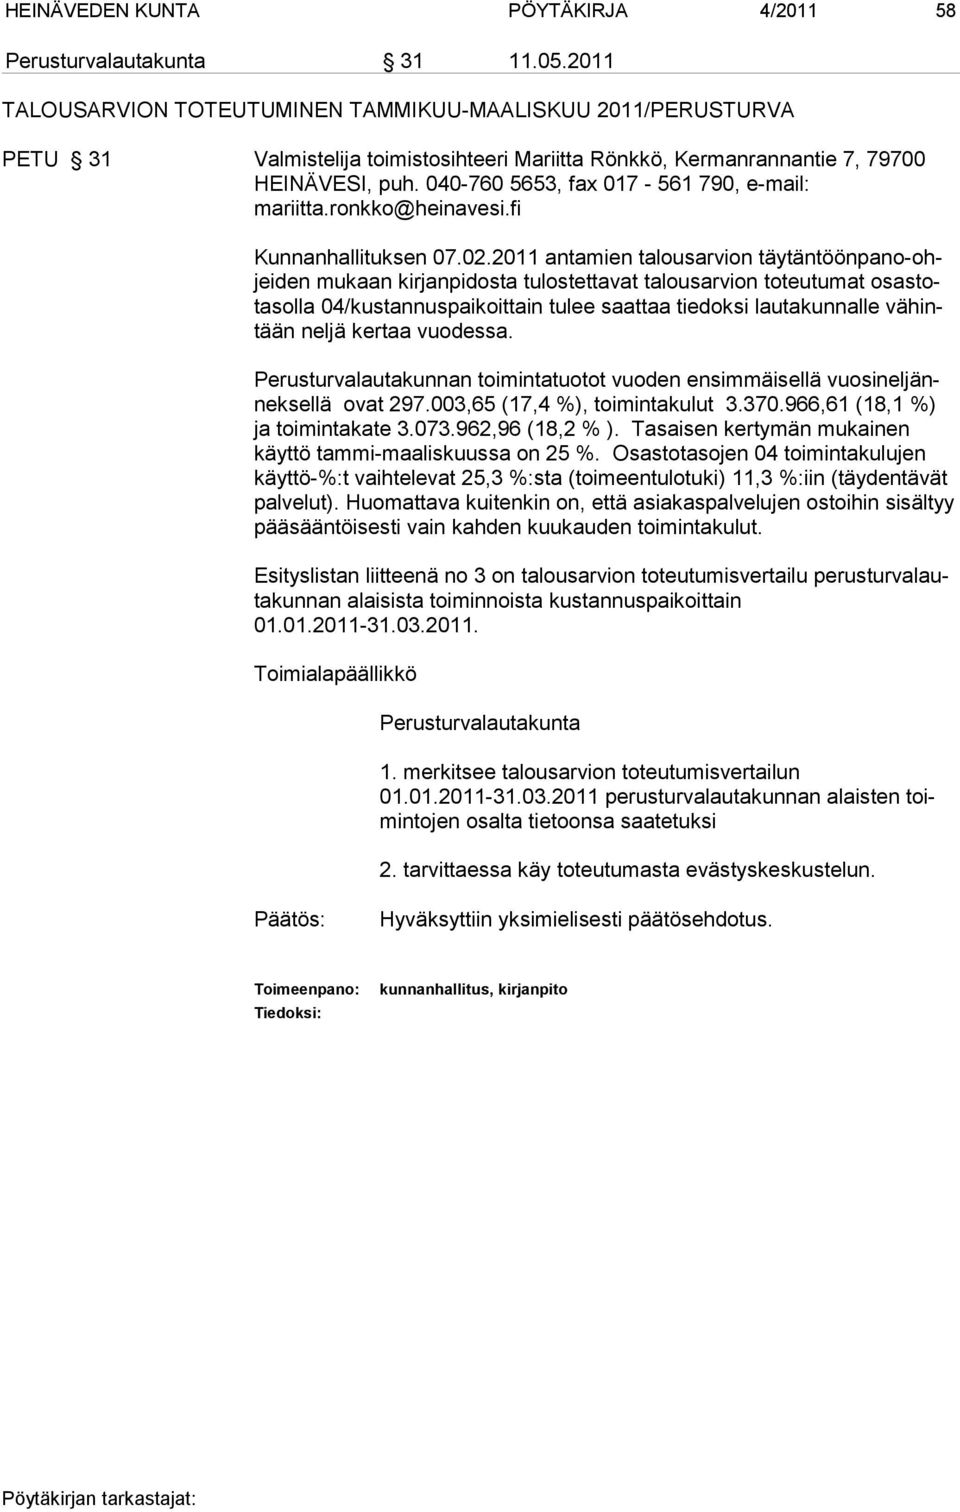 040-760 5653, fax 017-561 790, e-mail: mariitta.ronkko@heinavesi.fi Kunnanhallituksen 07.02.